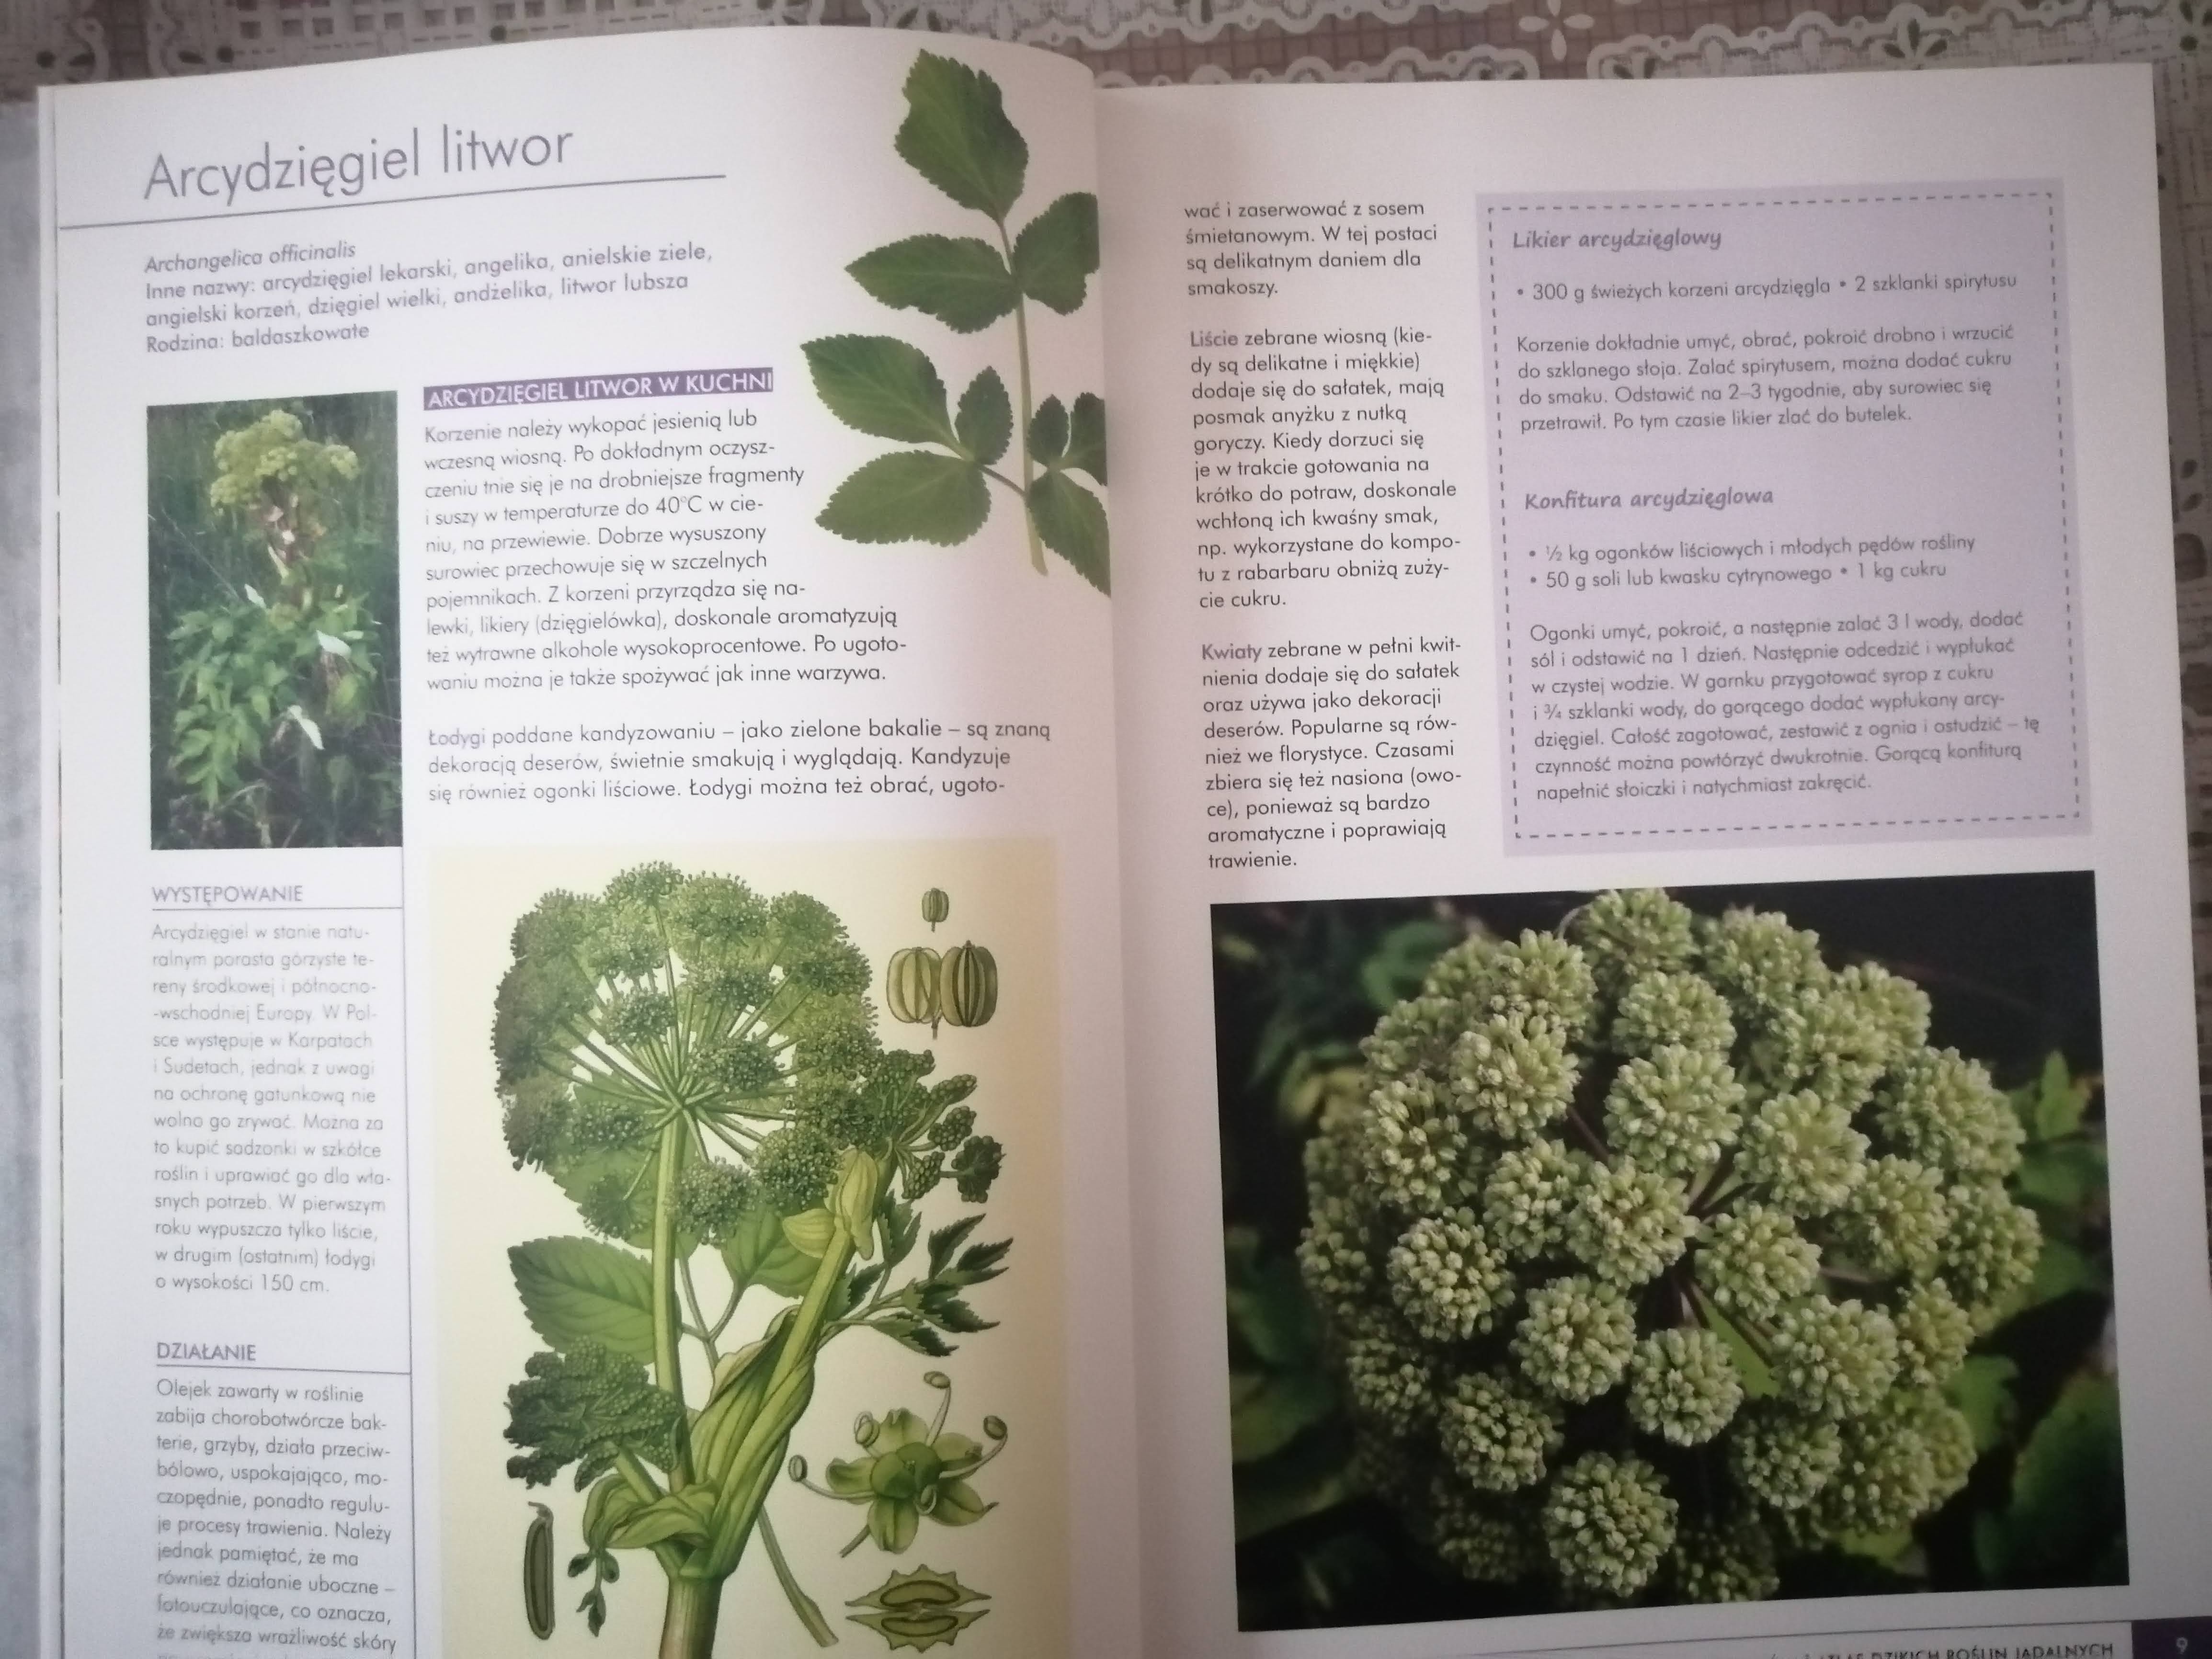 Atlas Do Rozpoznawania Roślin "Atlas dzikich roślin jadalnych", Monika Fijołek - recenzja książki